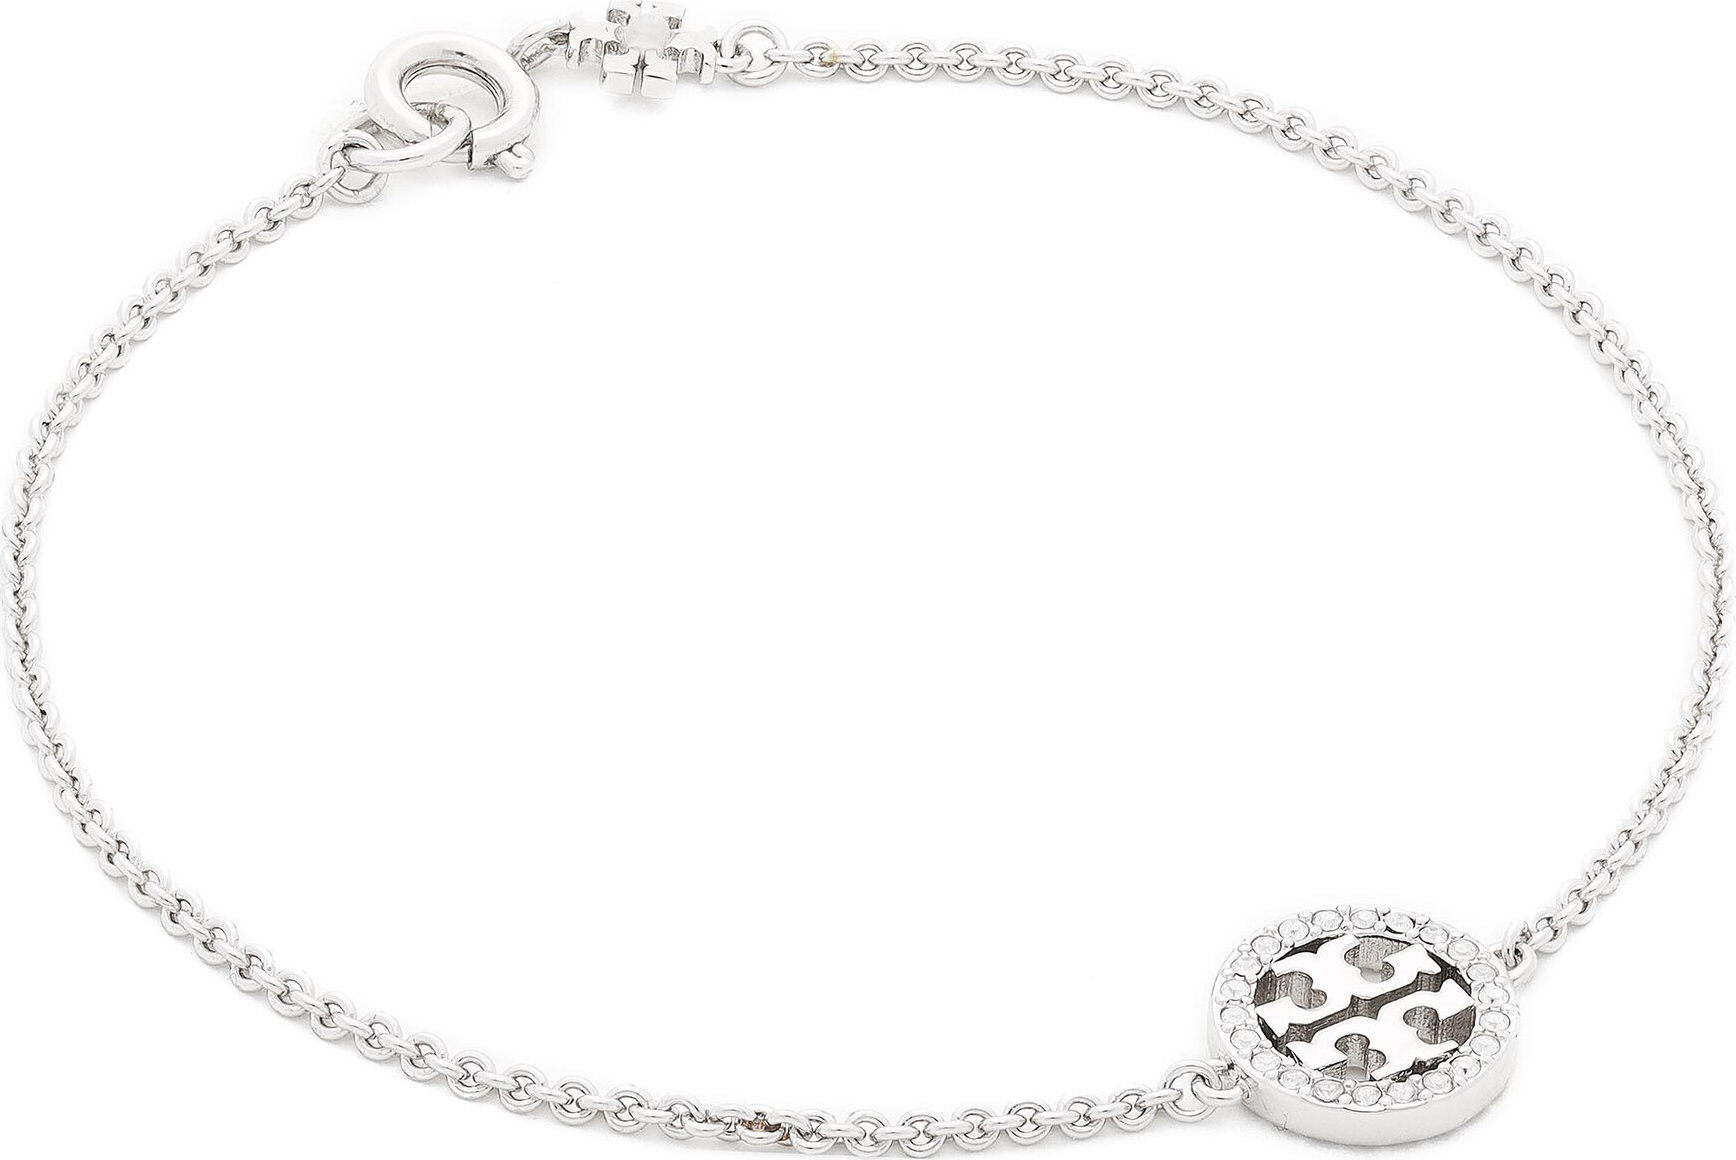 Náramek Tory Burch Miller Pave Chain Bracelet Tory 80997 Silver/Crystal